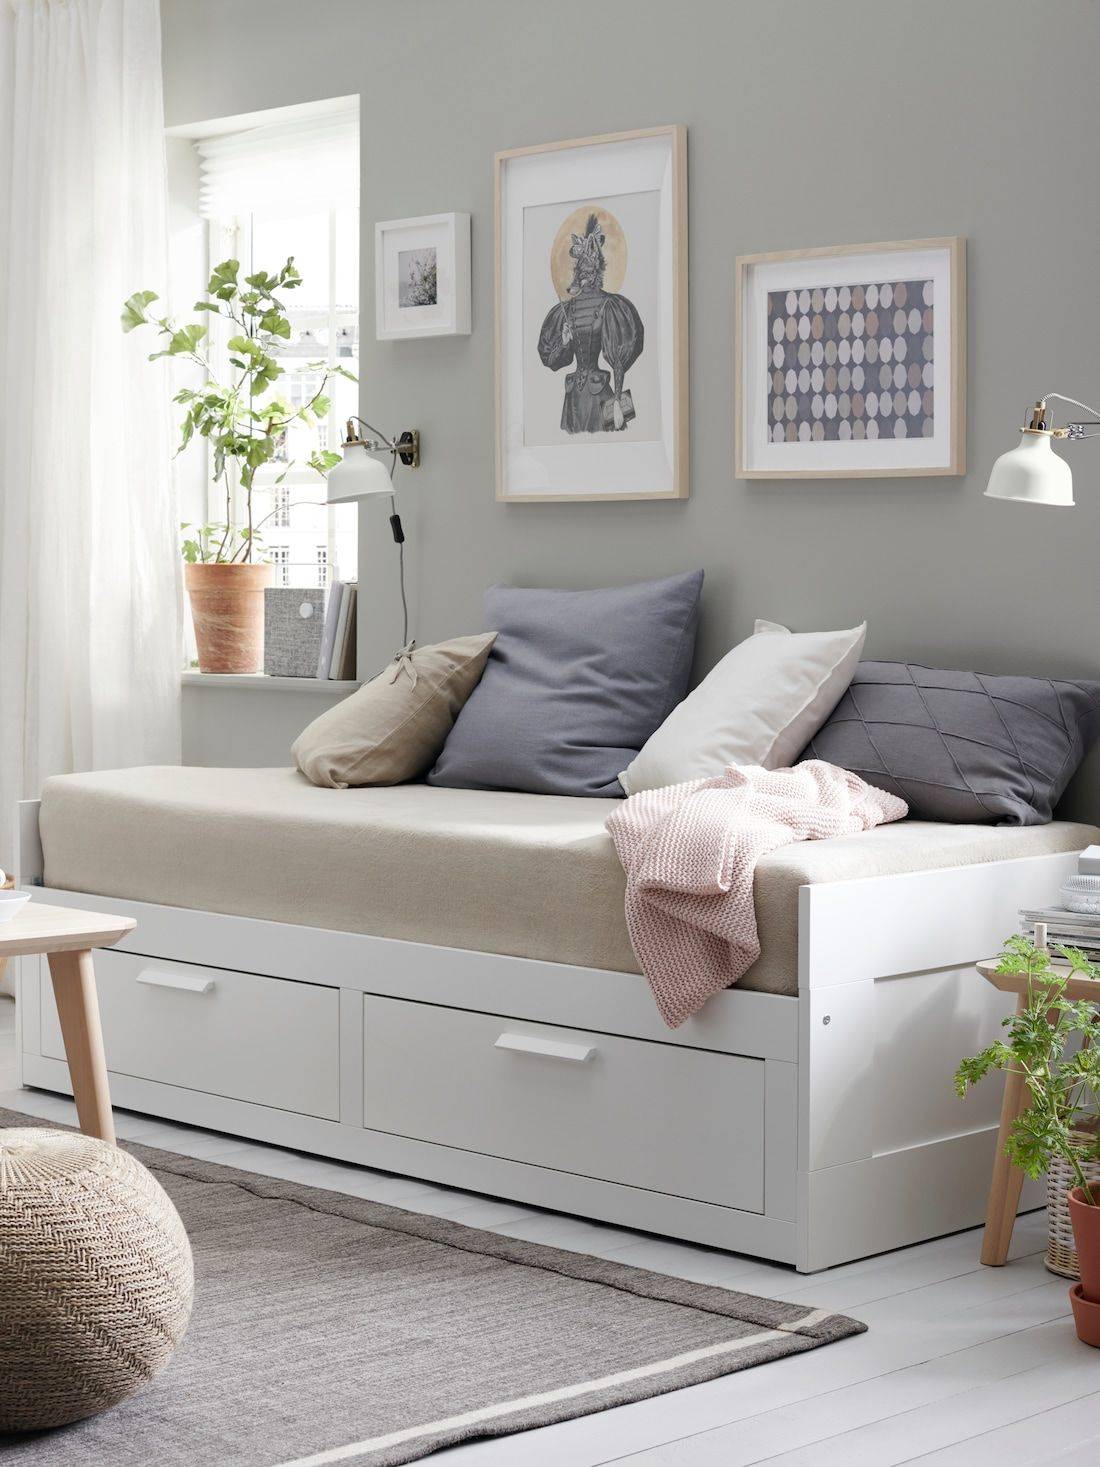 Ocurrencia Bloquear servidor Dormitorios juveniles de IKEA: las propuestas que más nos gustan